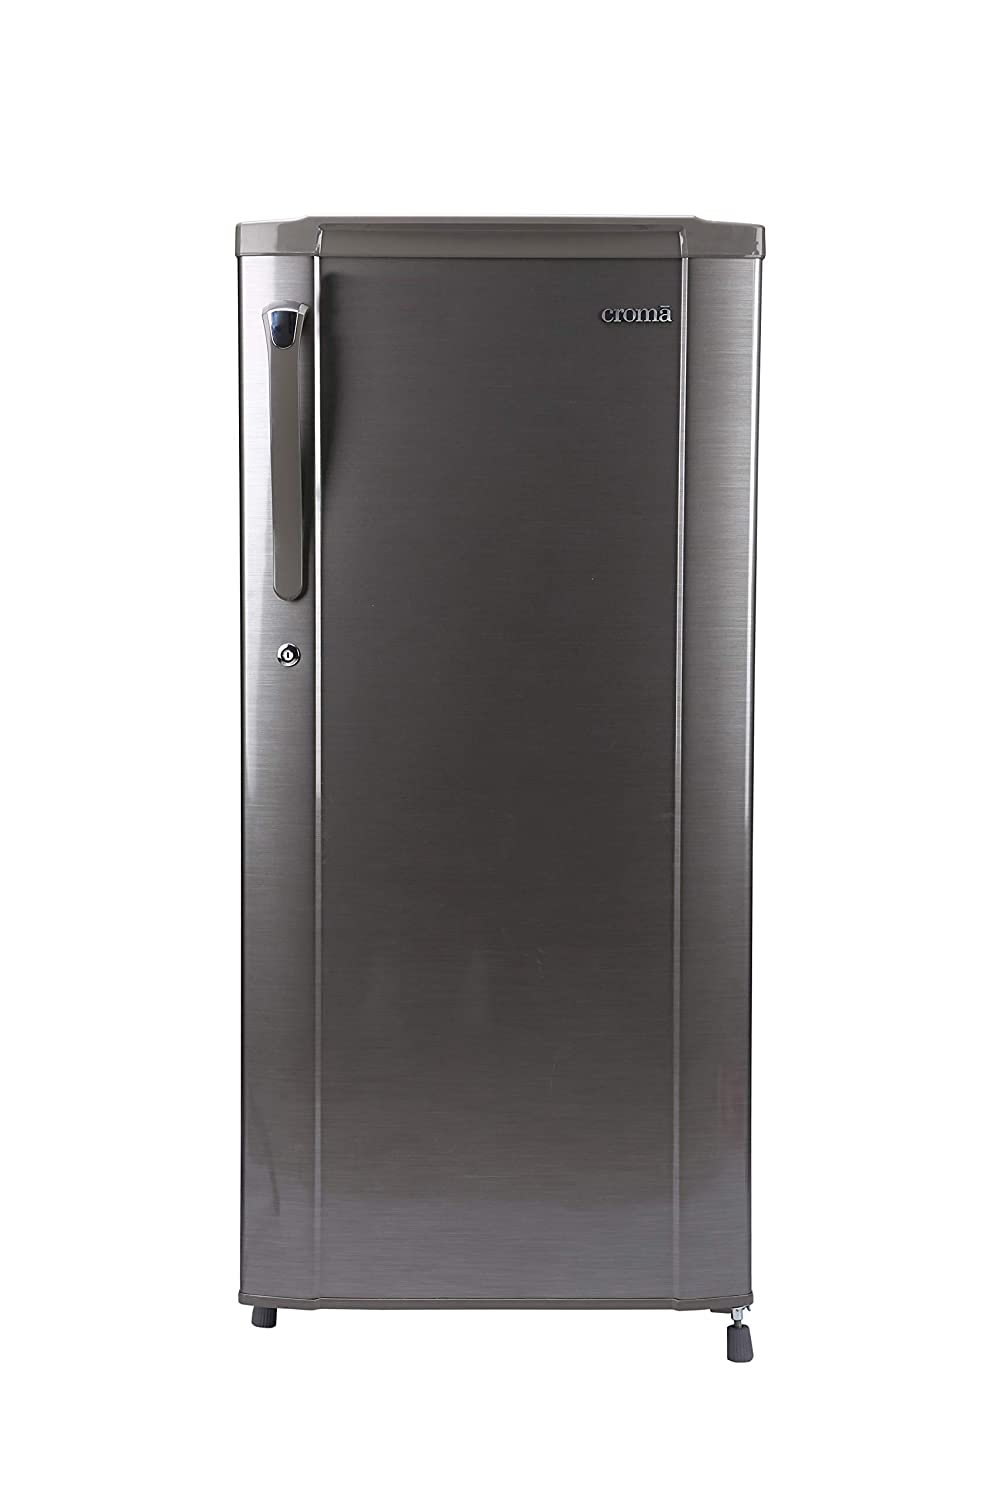 Croma CRAR0216 190 Ltr Single Door Refrigerator